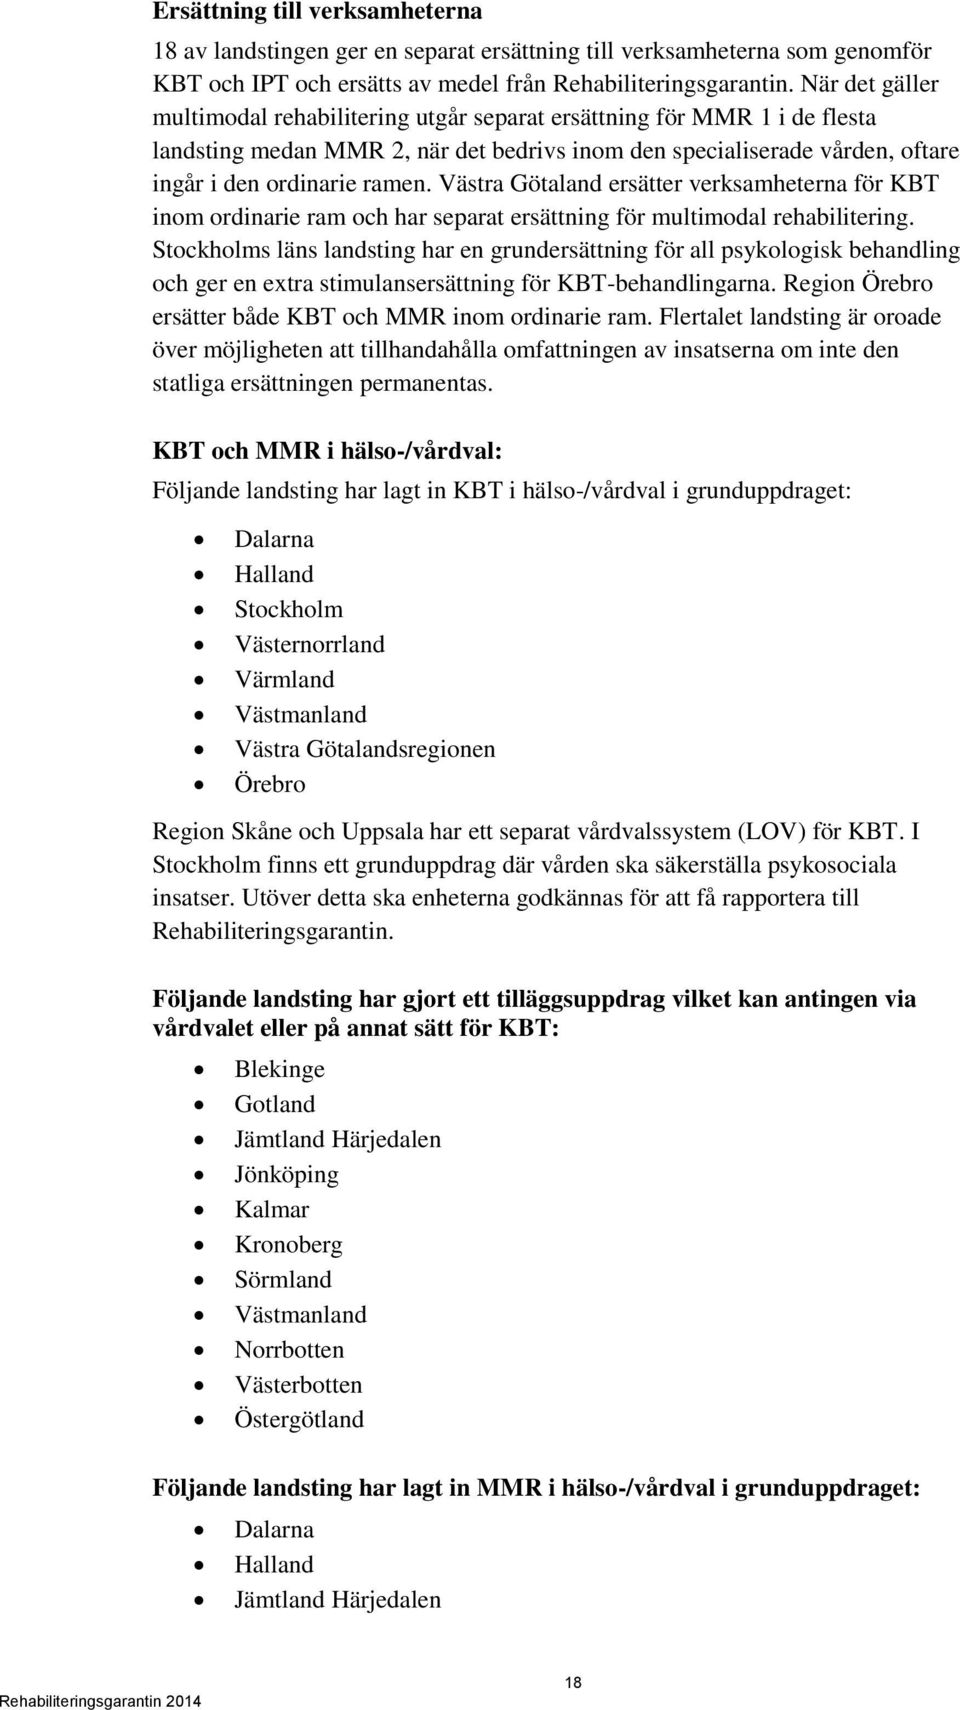 Västra Götaland ersätter verksamheterna för KBT inom ordinarie ram och har separat ersättning för multimodal rehabilitering.